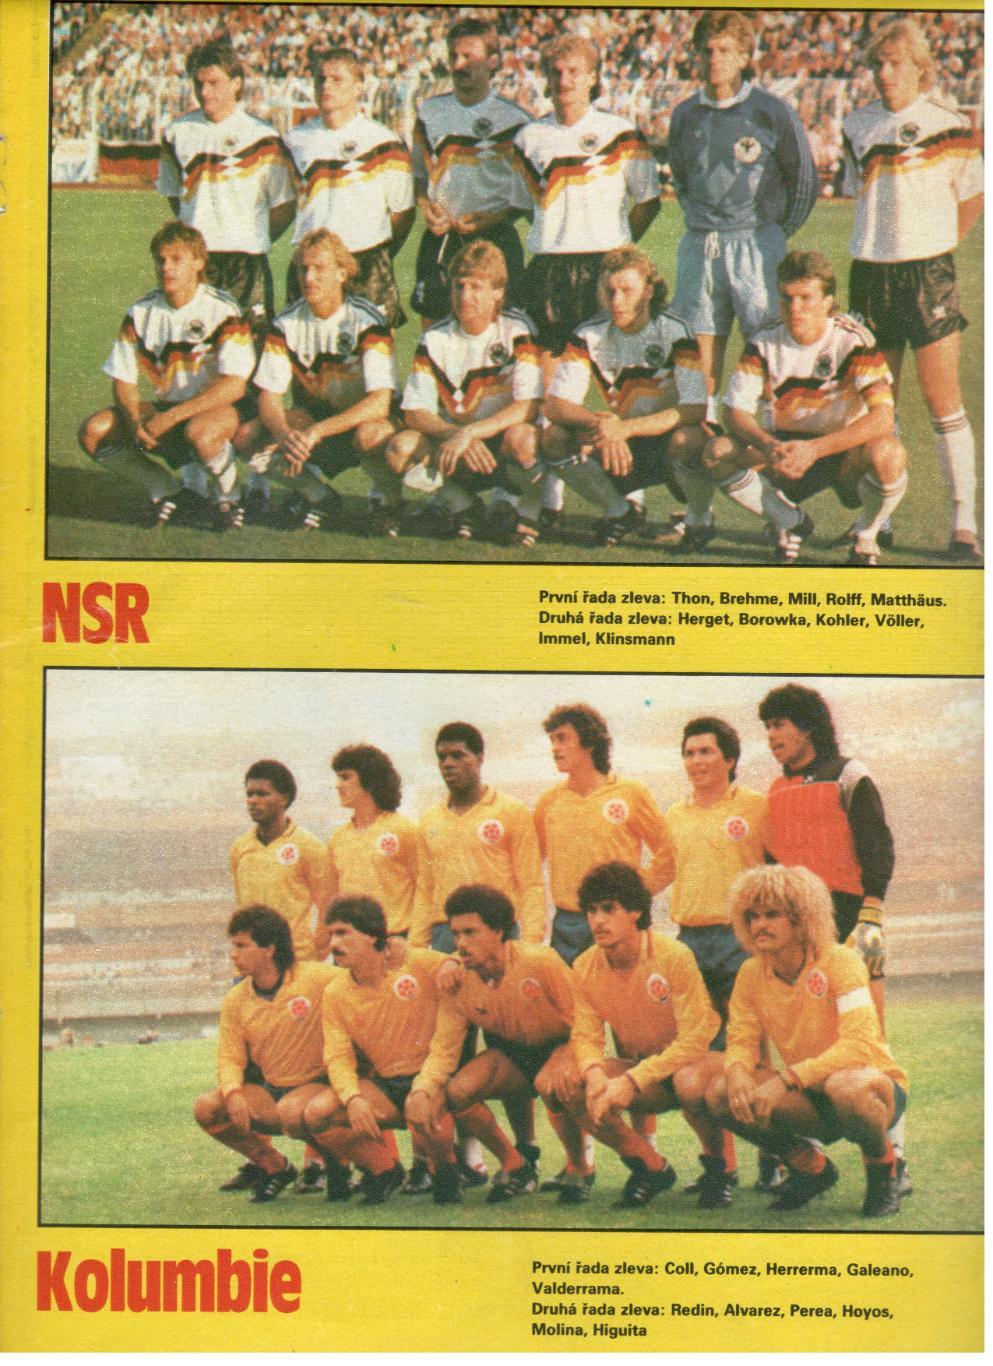 Участники чемпионата мира 1990. ФРГ, Колумбия